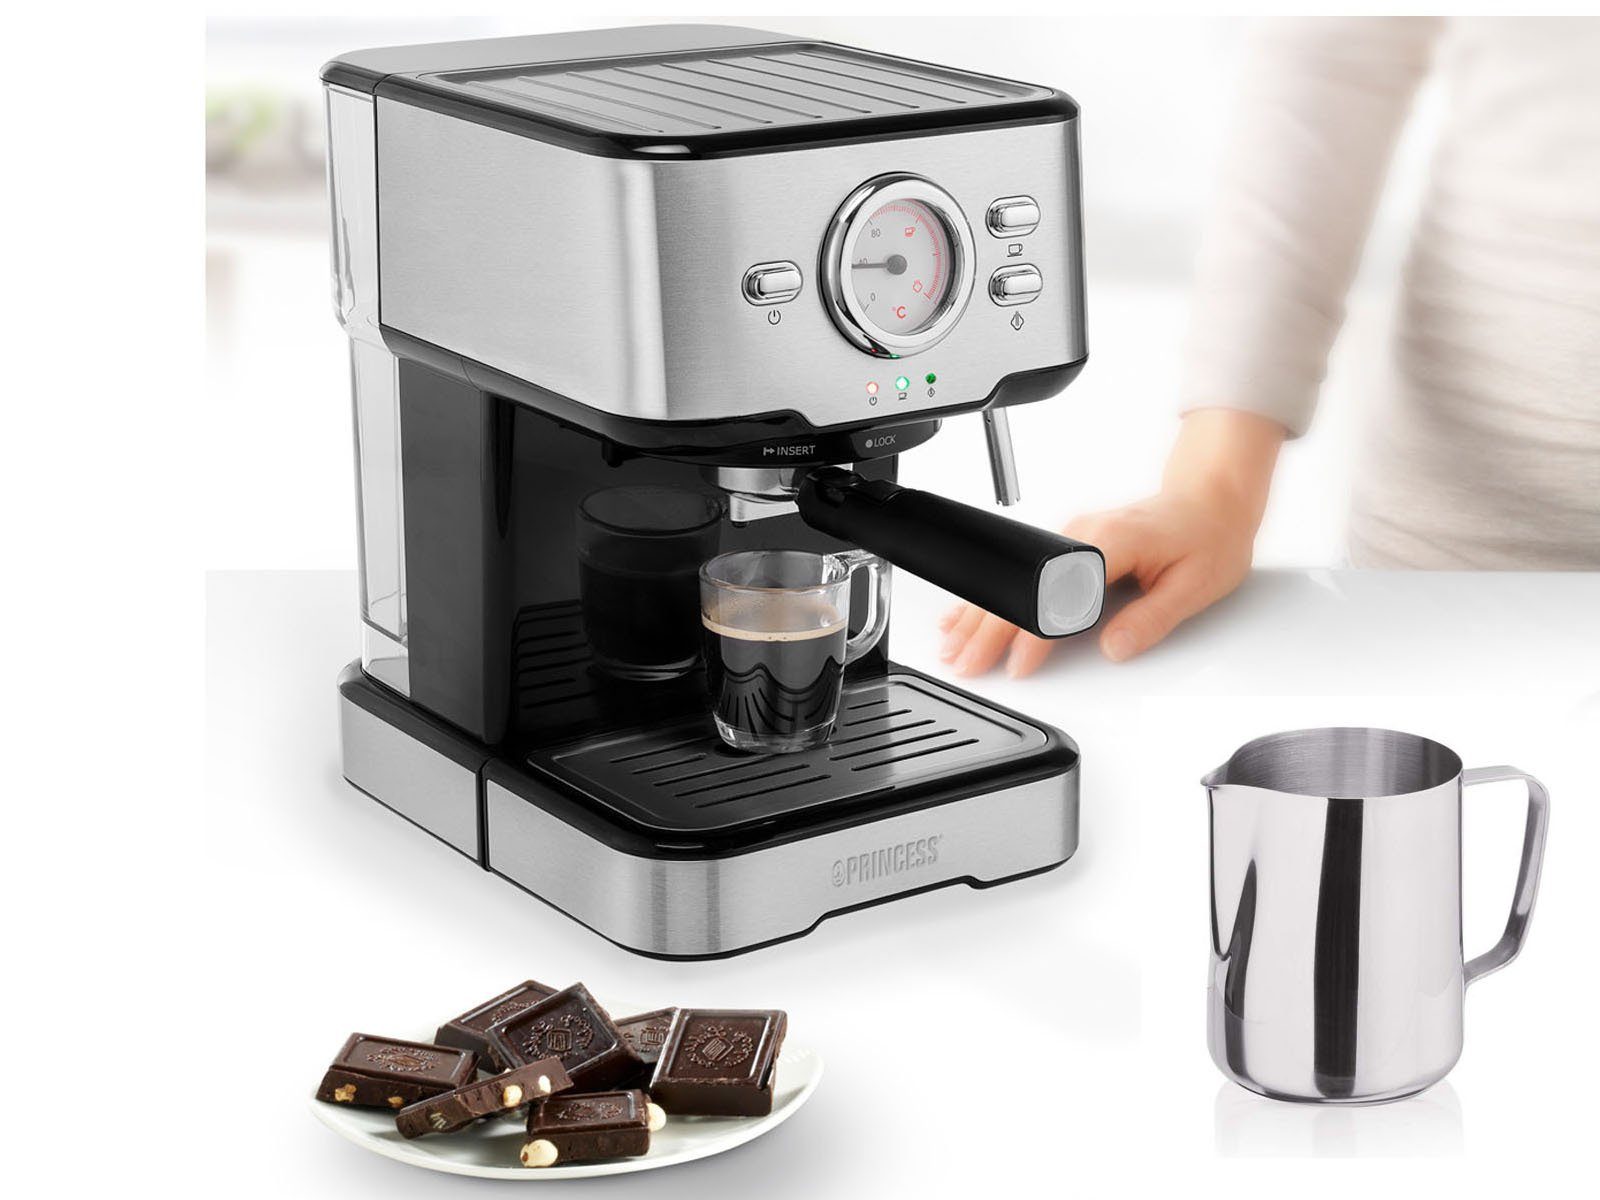 PRINCESS Siebträgermaschine, italienische Siebdruck Kaffee &  Espresso-Maschine mit Milchaufschäumer für Latte Macchiato & Cappuccino,  2in1 auch für Kapseln geeignet